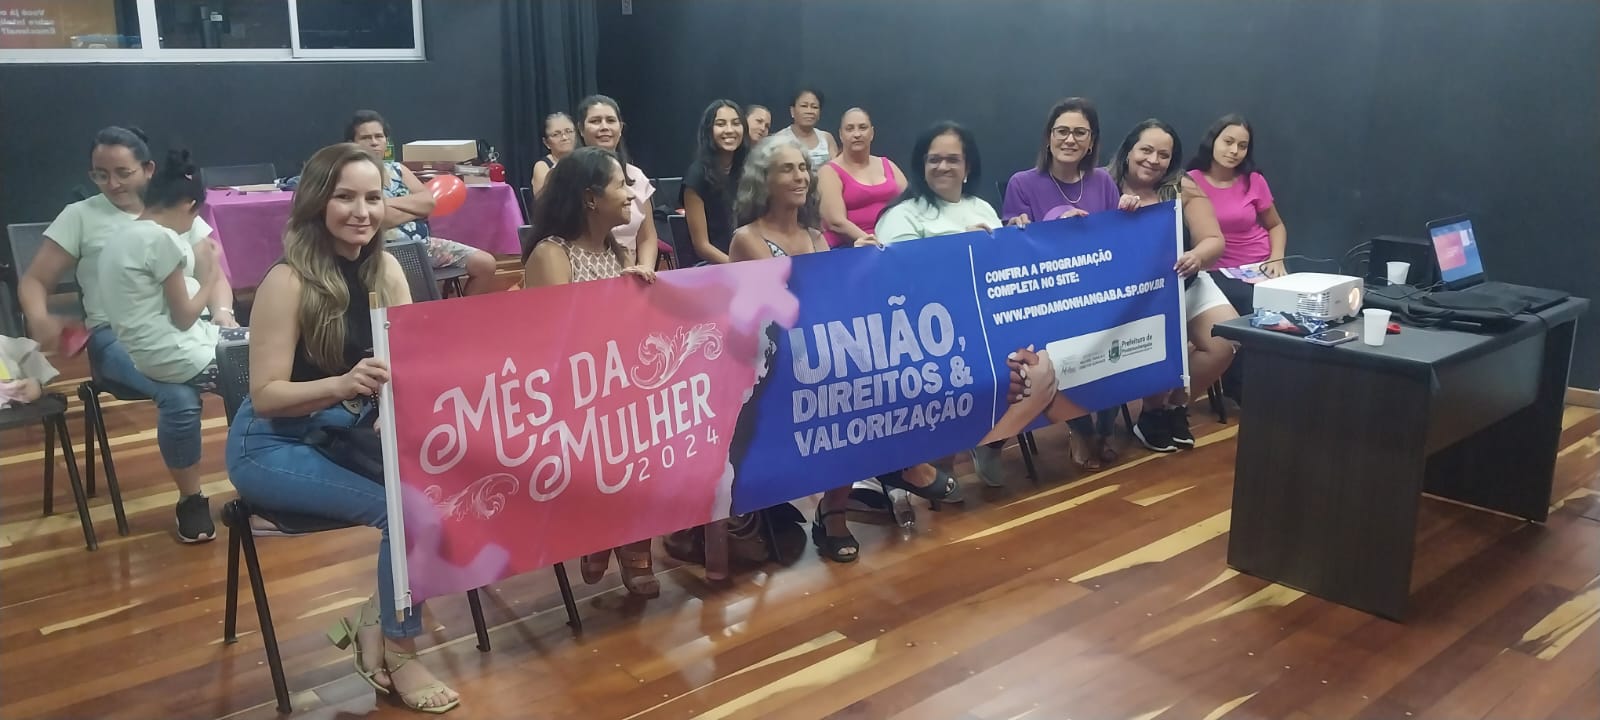 Palestra motivacional reúne dezenas de mulheres em Moreira Cesar